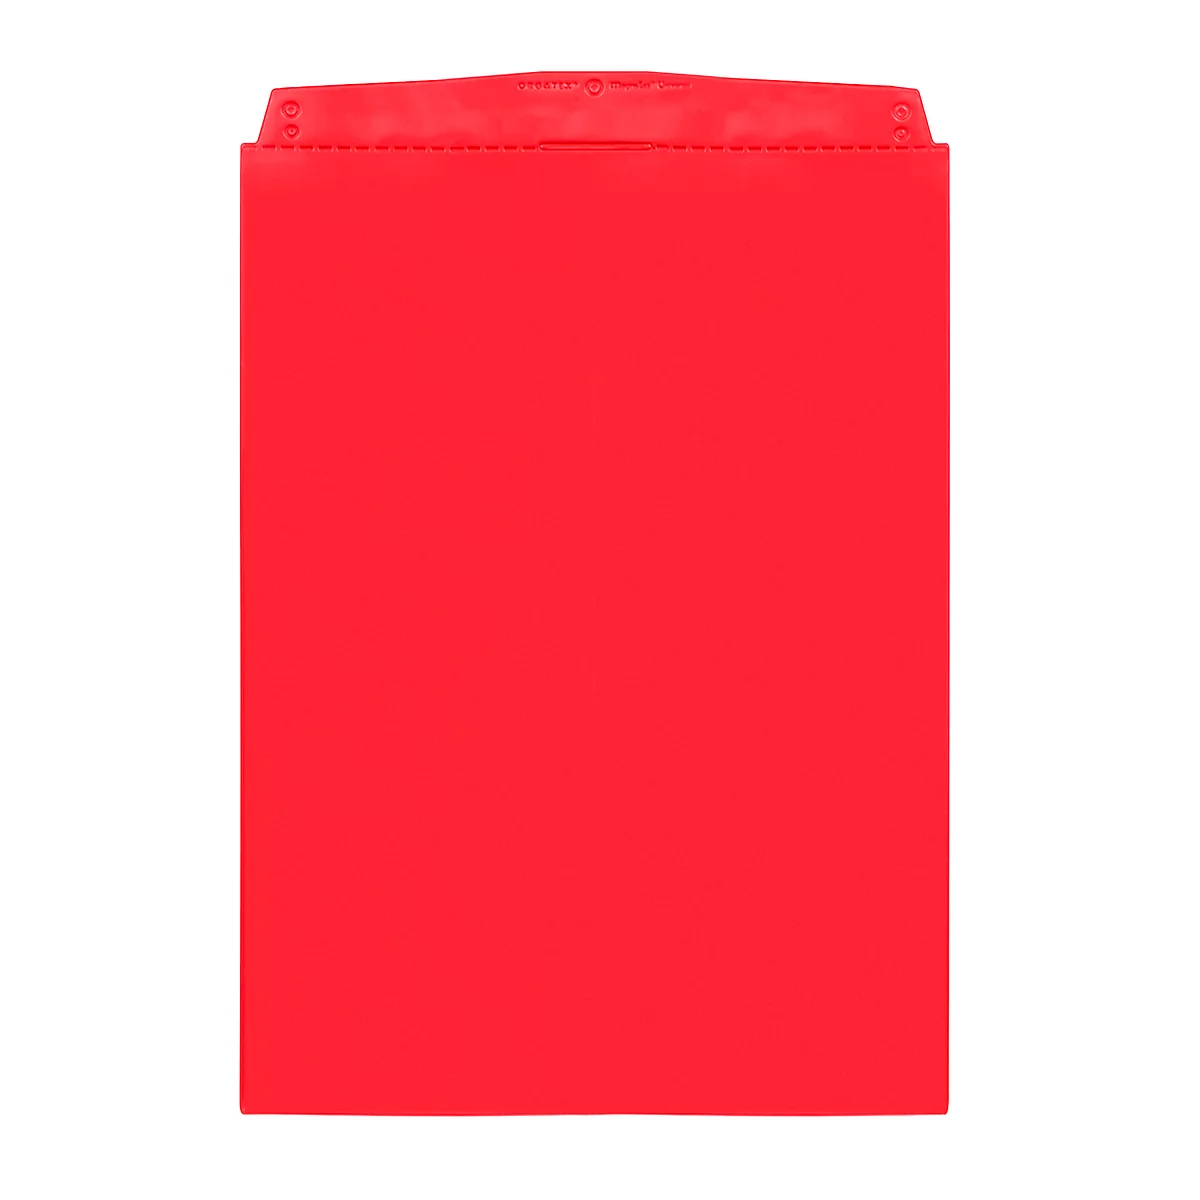 Fundas transparentes Orgatex, A4 vertical, rojo, 10 uds.